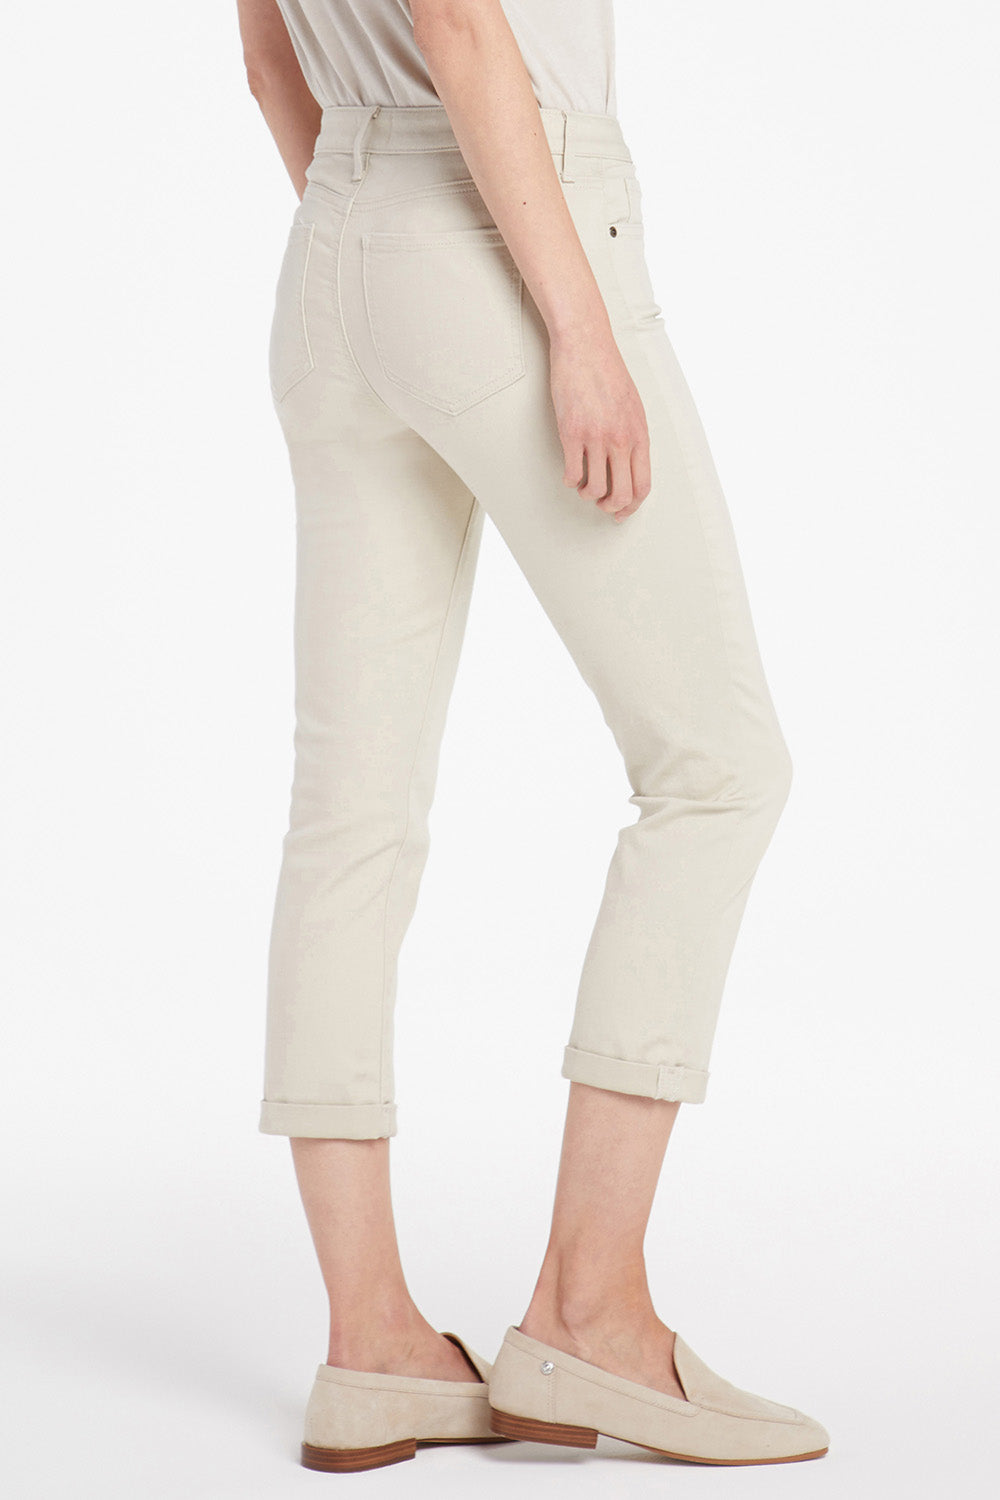 Chloe Skinny Capri Jeans In Cool Embrace® Denim With Roll Cuffs